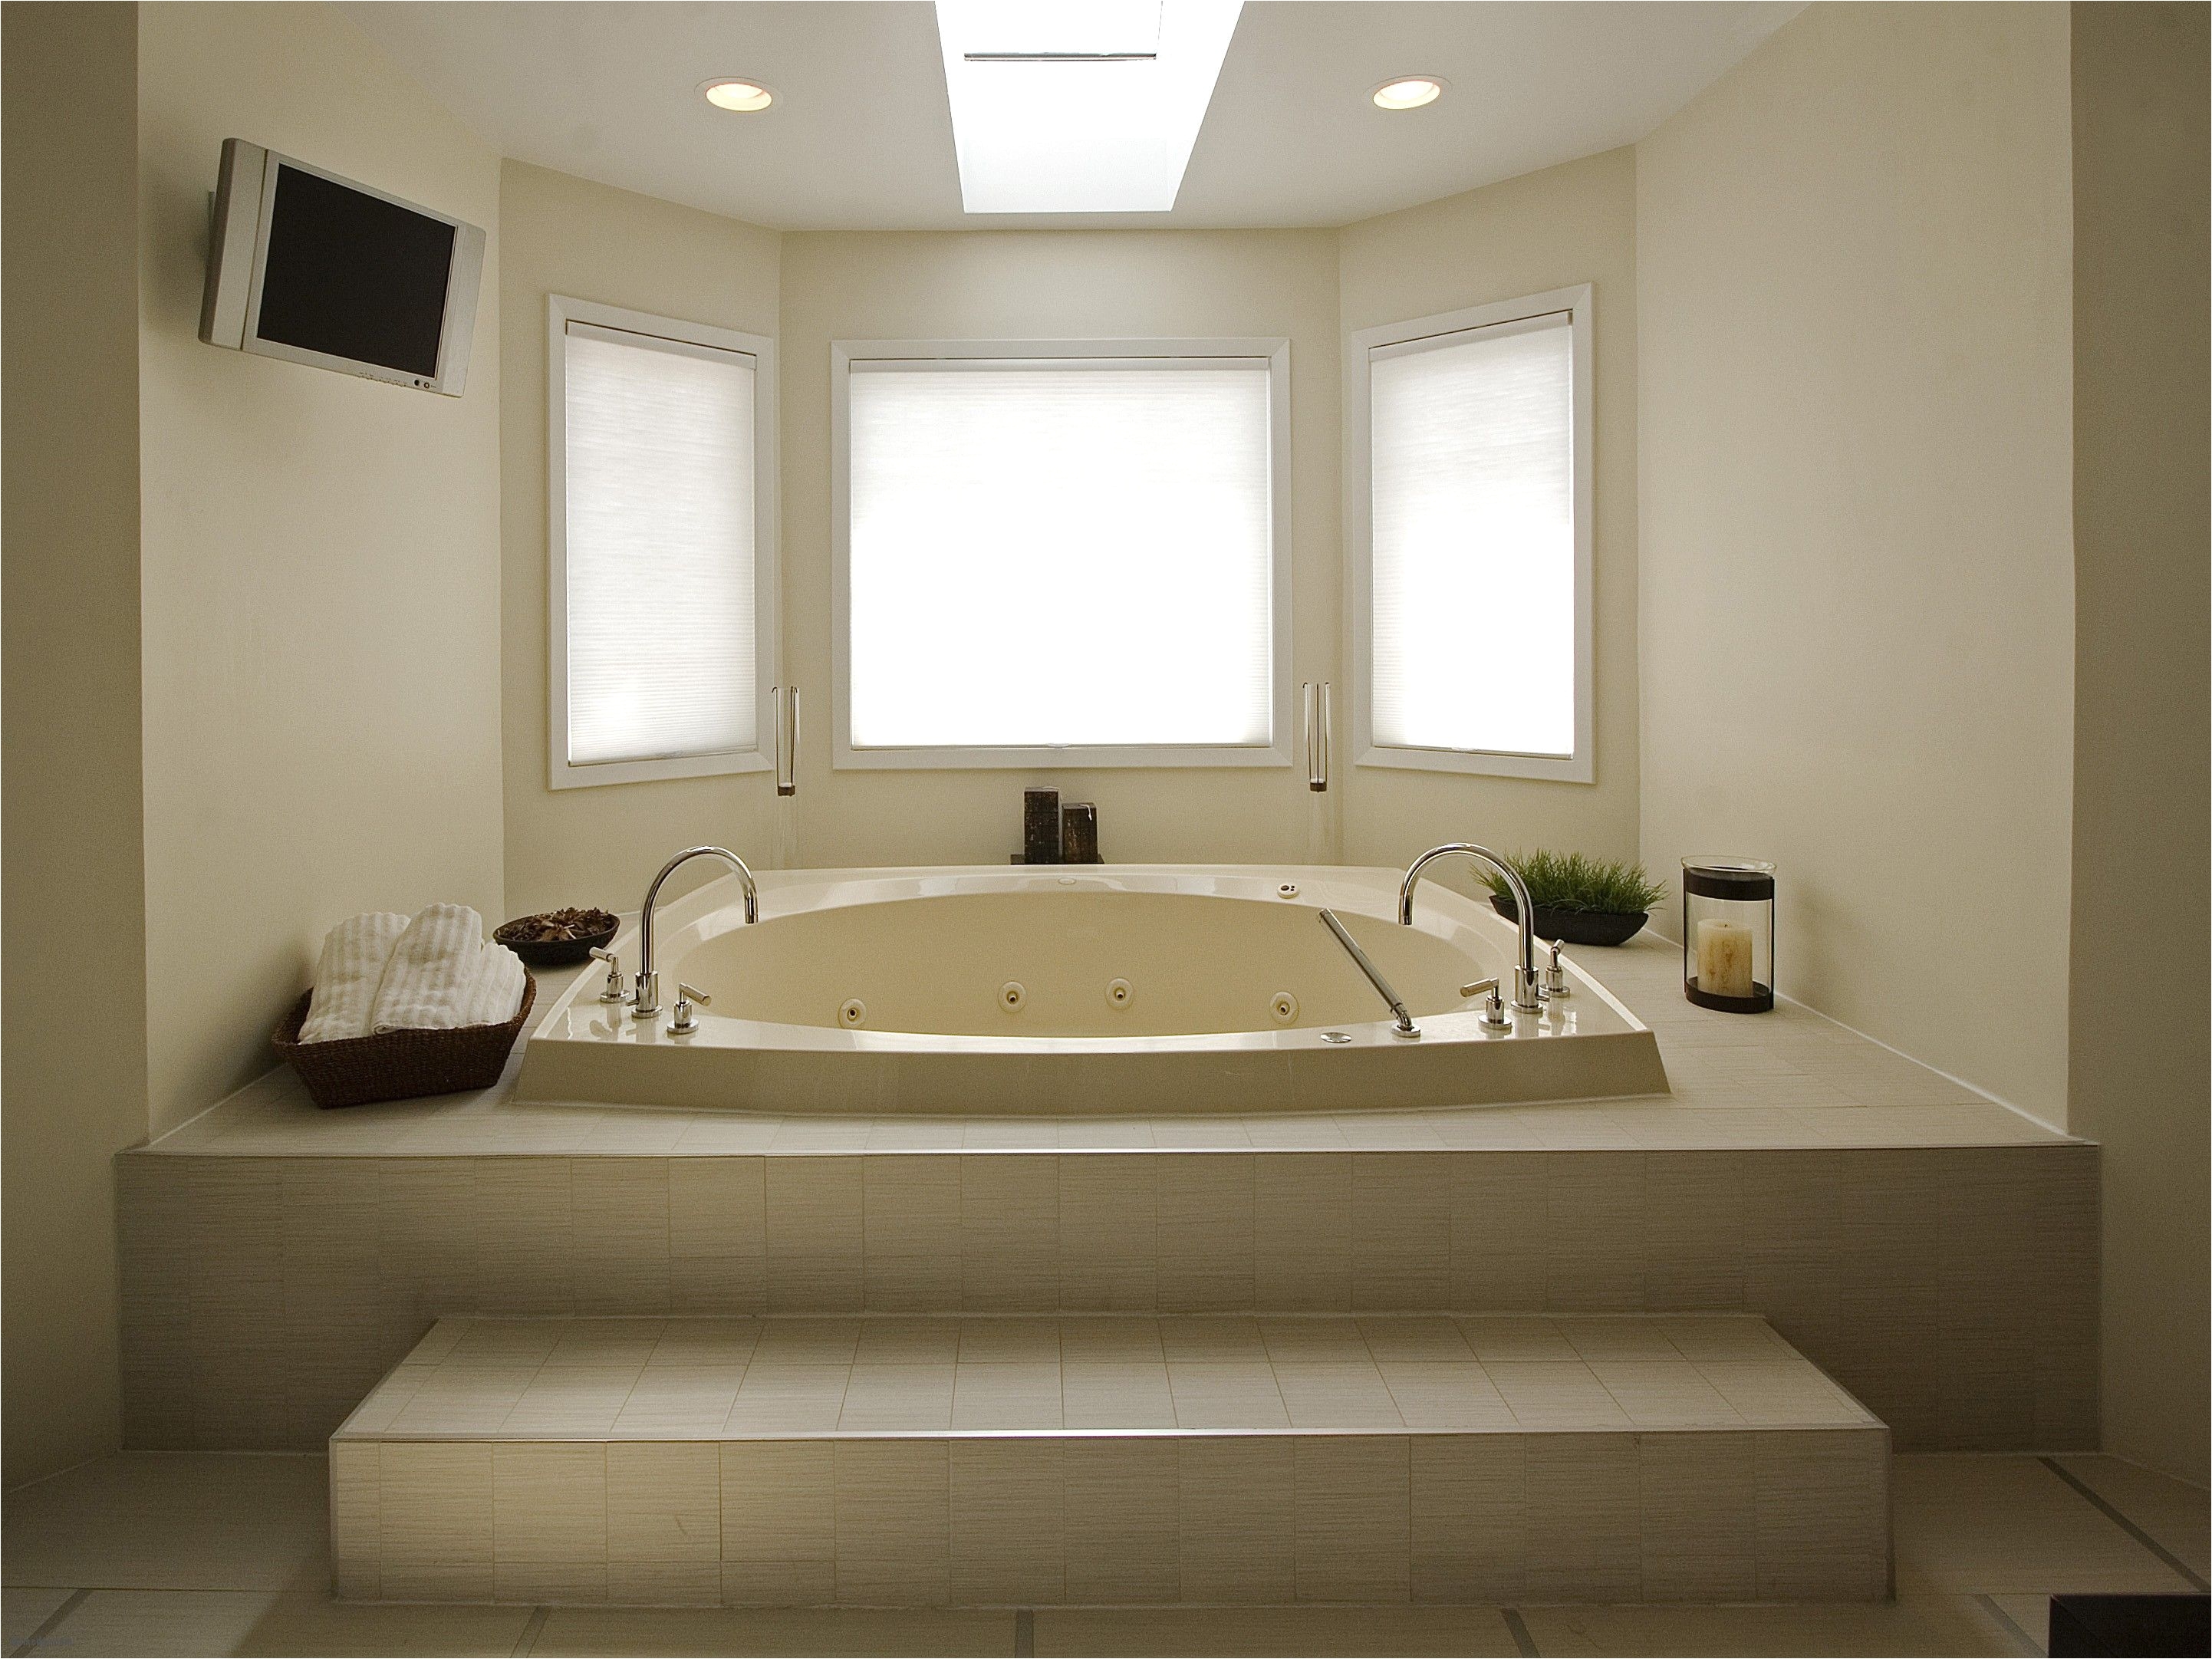 cool best of large bathtubs bathtubs choosing bathroom fixtures design choose floor plan japanese